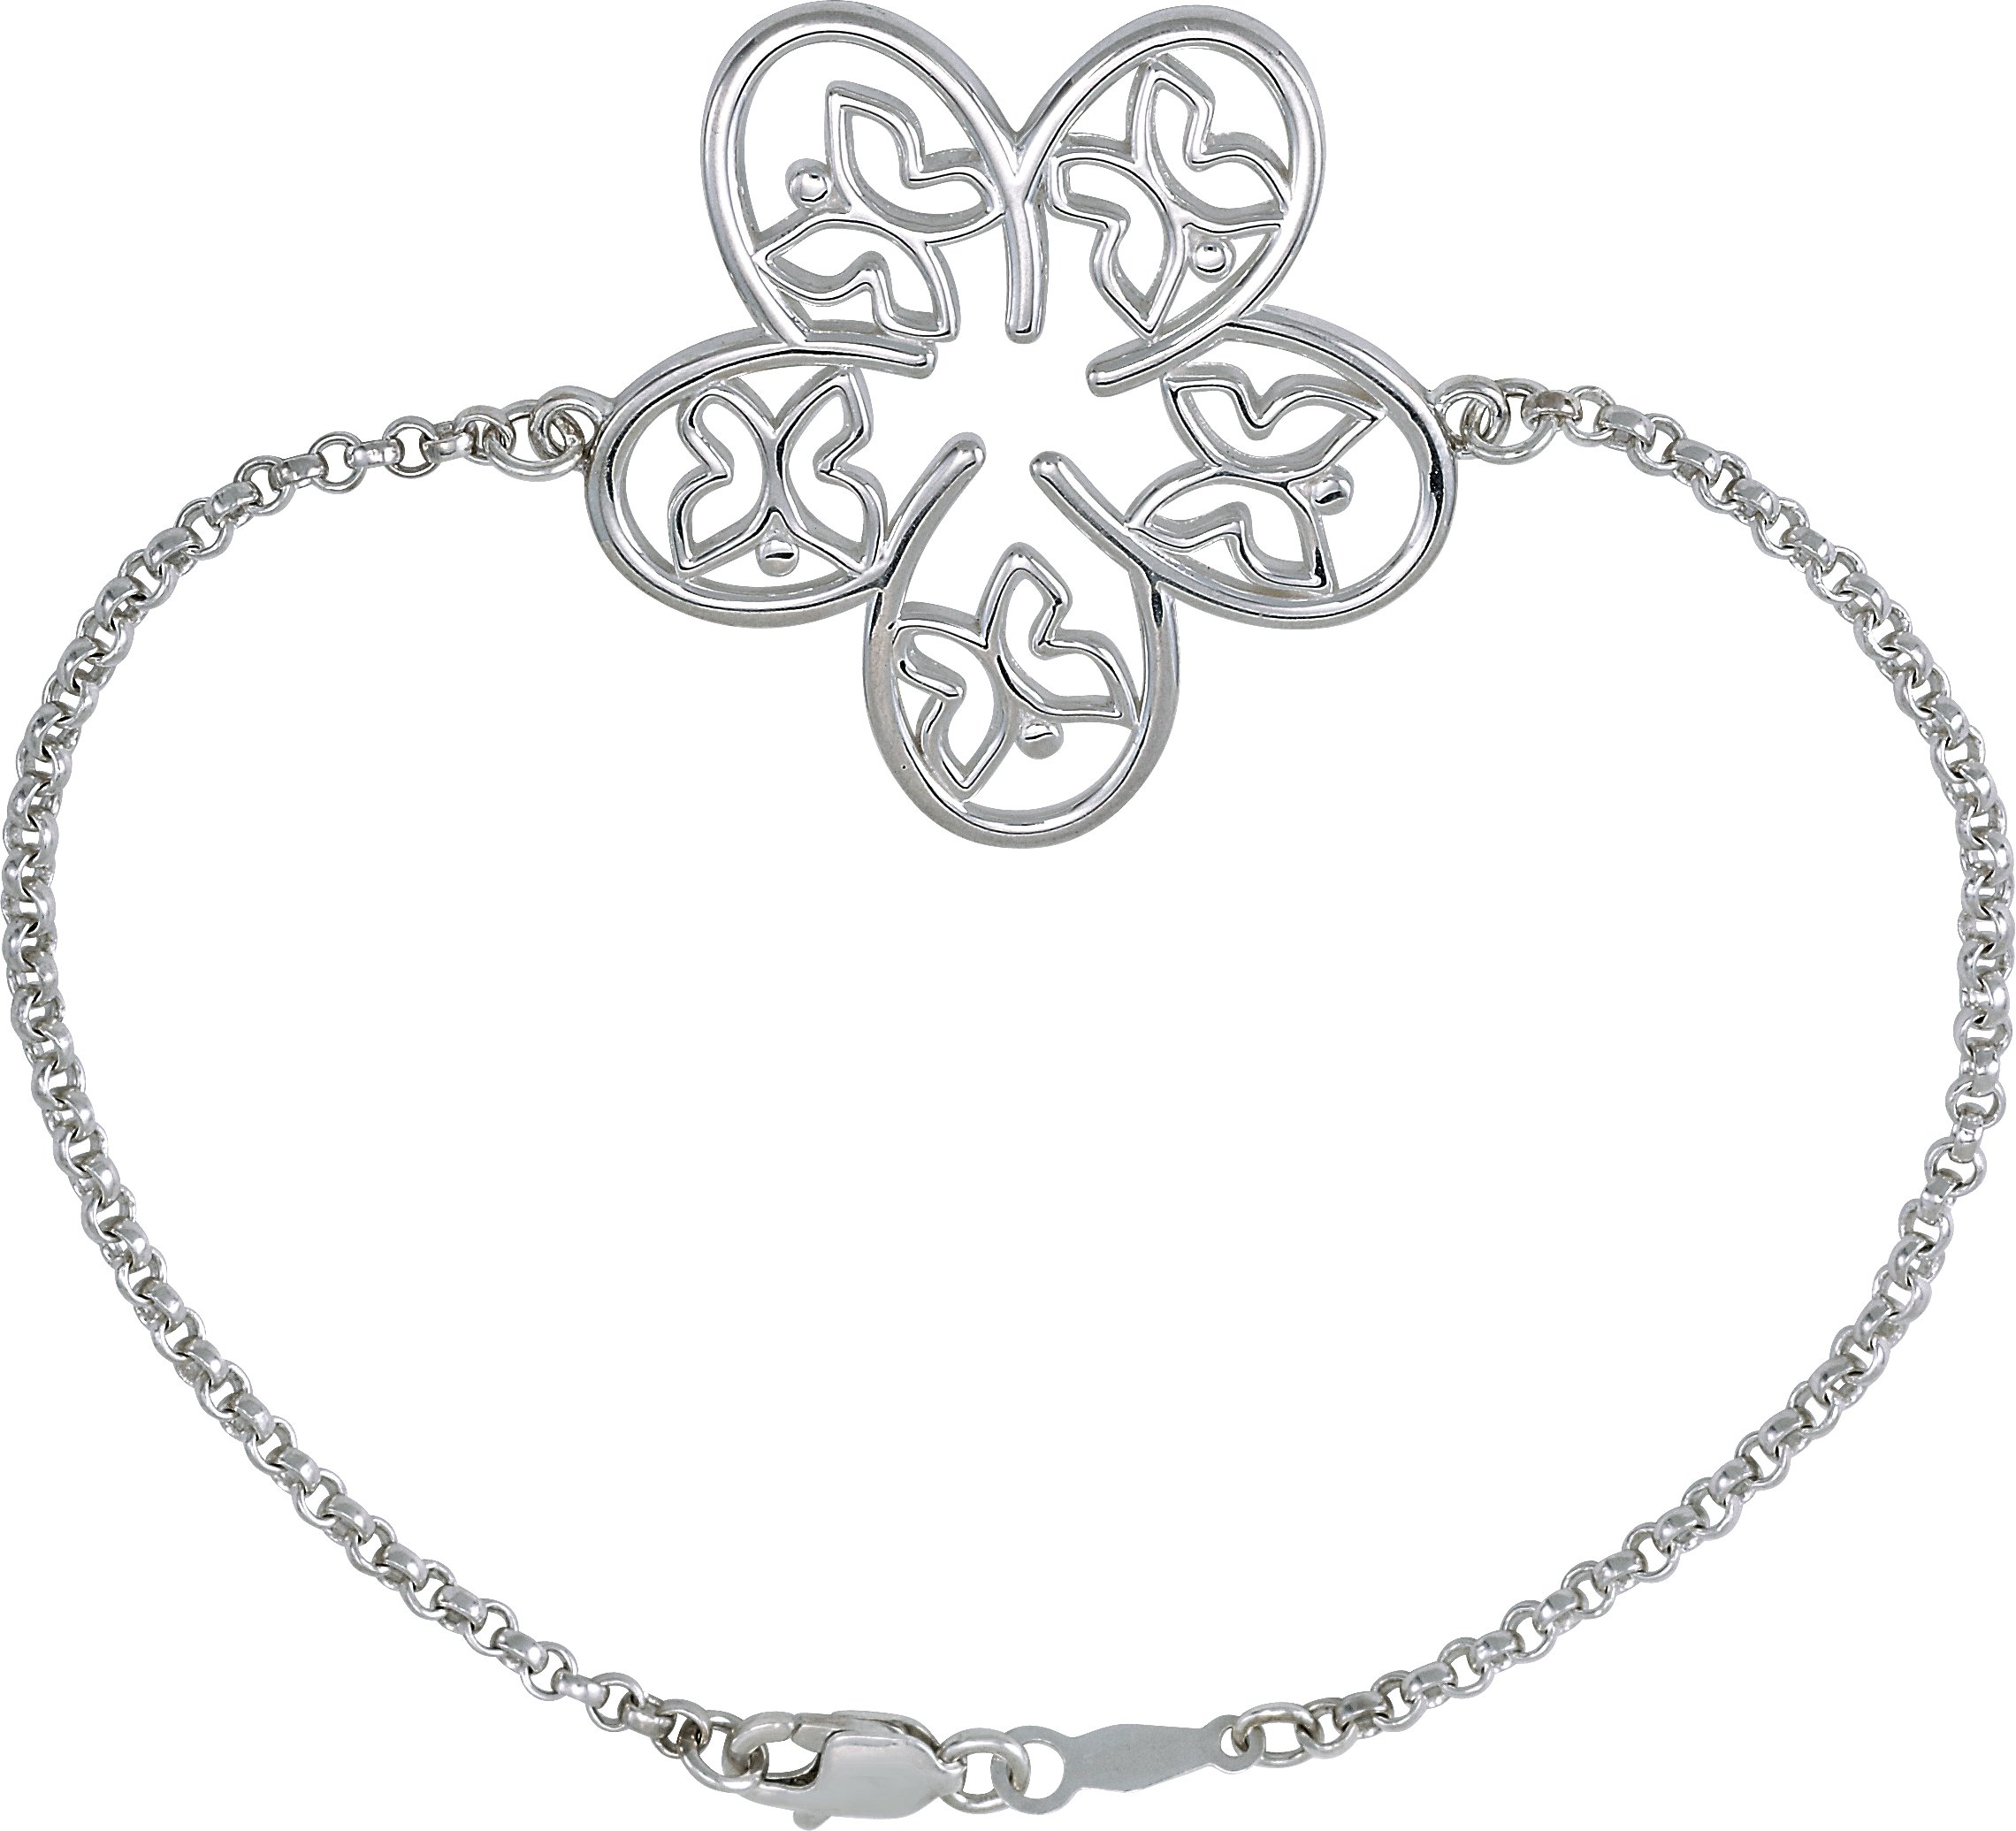 Sterling Silver Flower & Butterfly 7 1/2" Bracelet